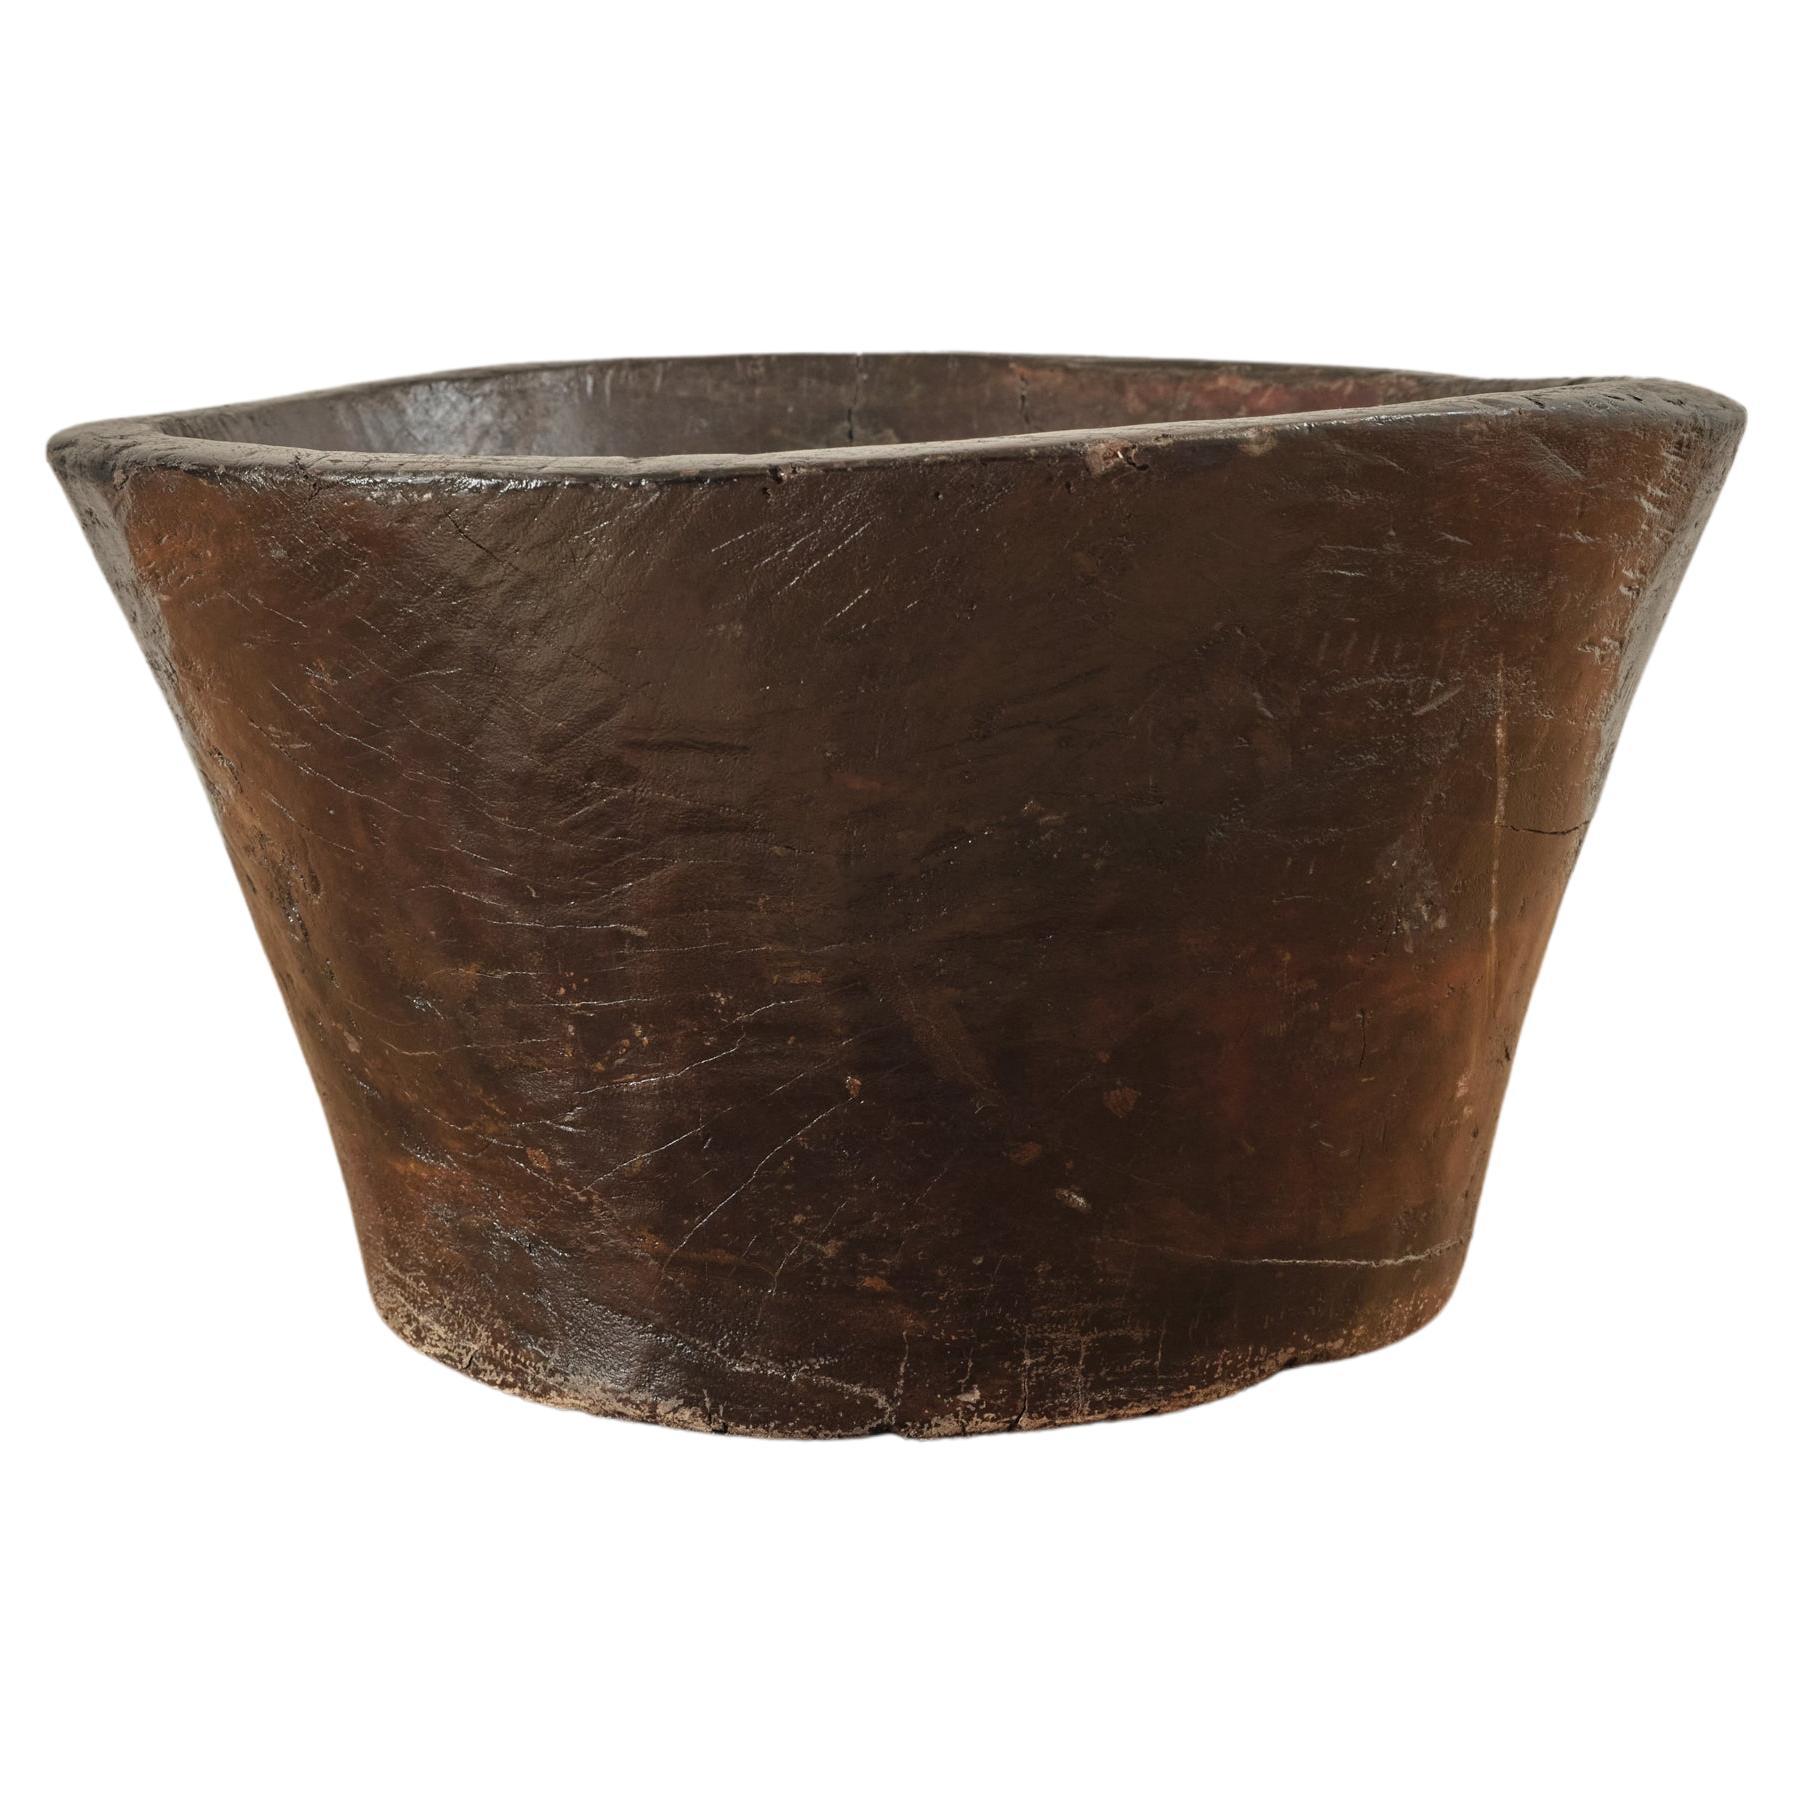 Carved Wooden Primitive Bowl.